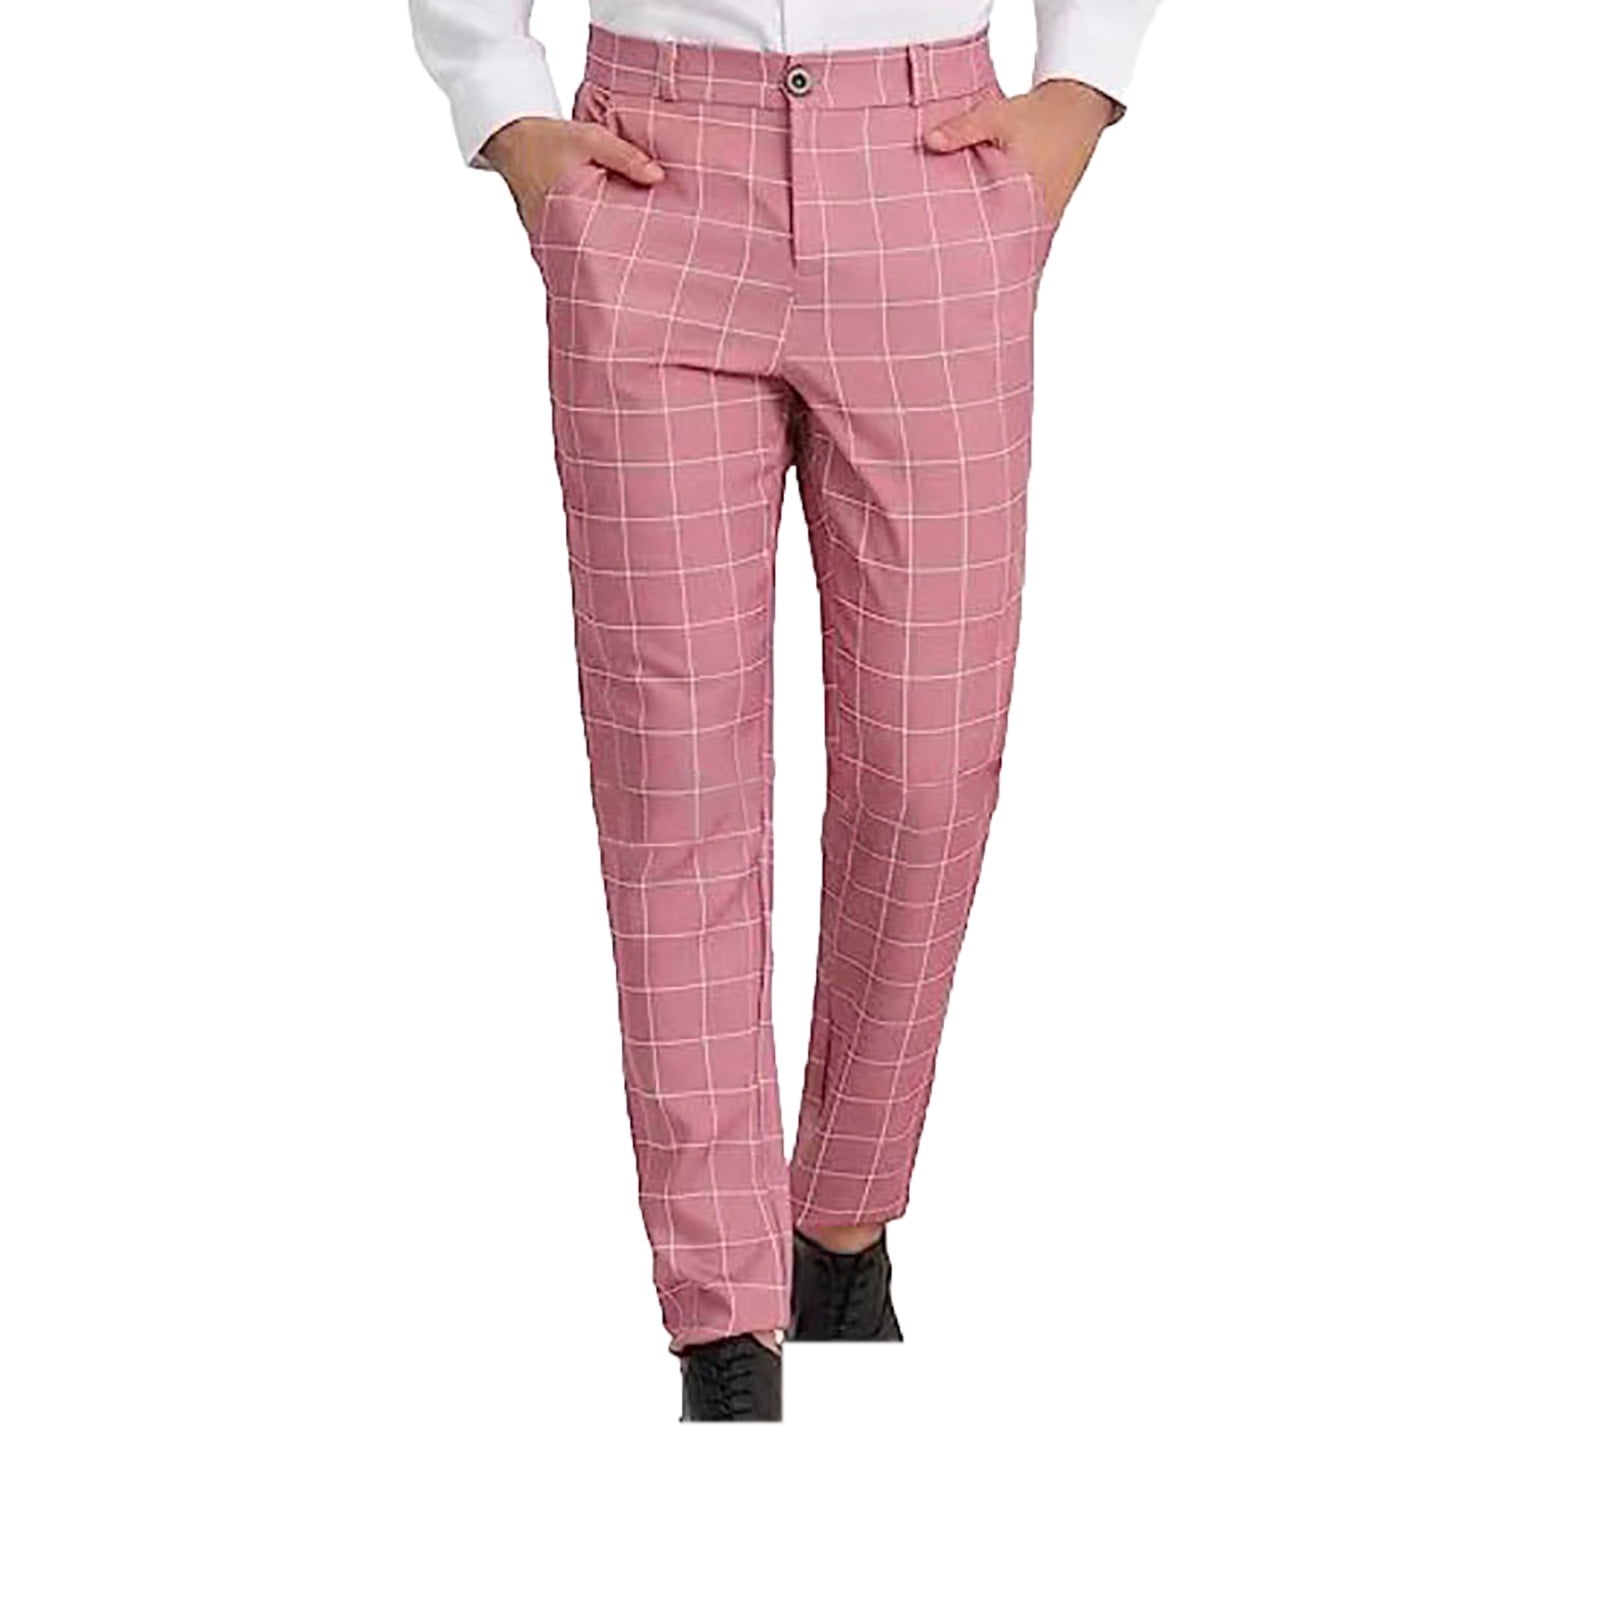 Ptauao Plaid Suit Pants for Men Fashion Slim Fit Suit Trousers Casual ...